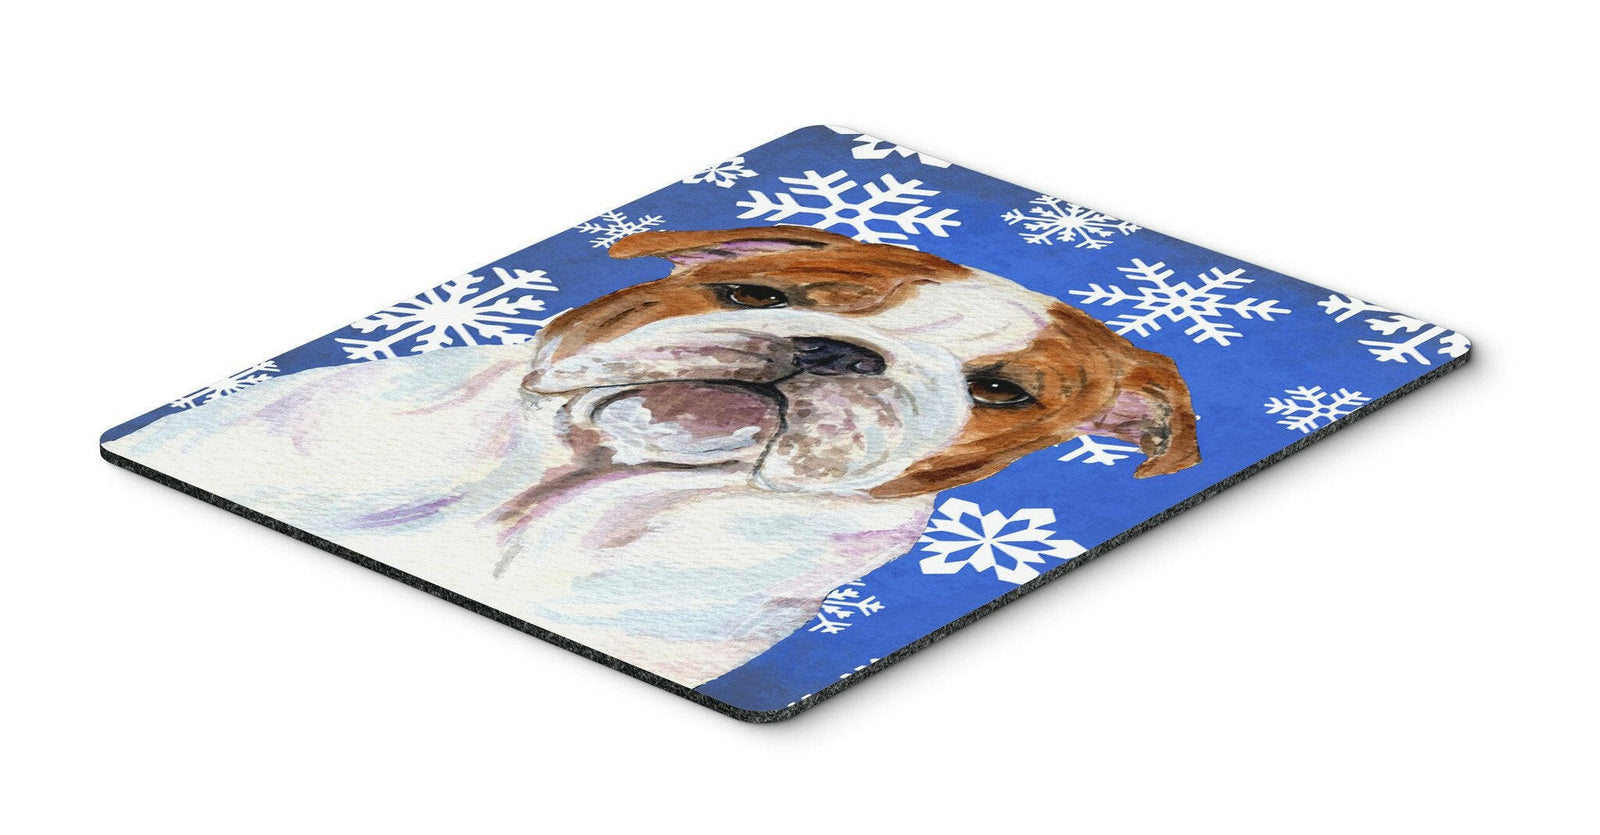 Bulldog English Winter Snowflakes Holiday Mouse Pad, Hot Pad or Trivet by Caroline's Treasures